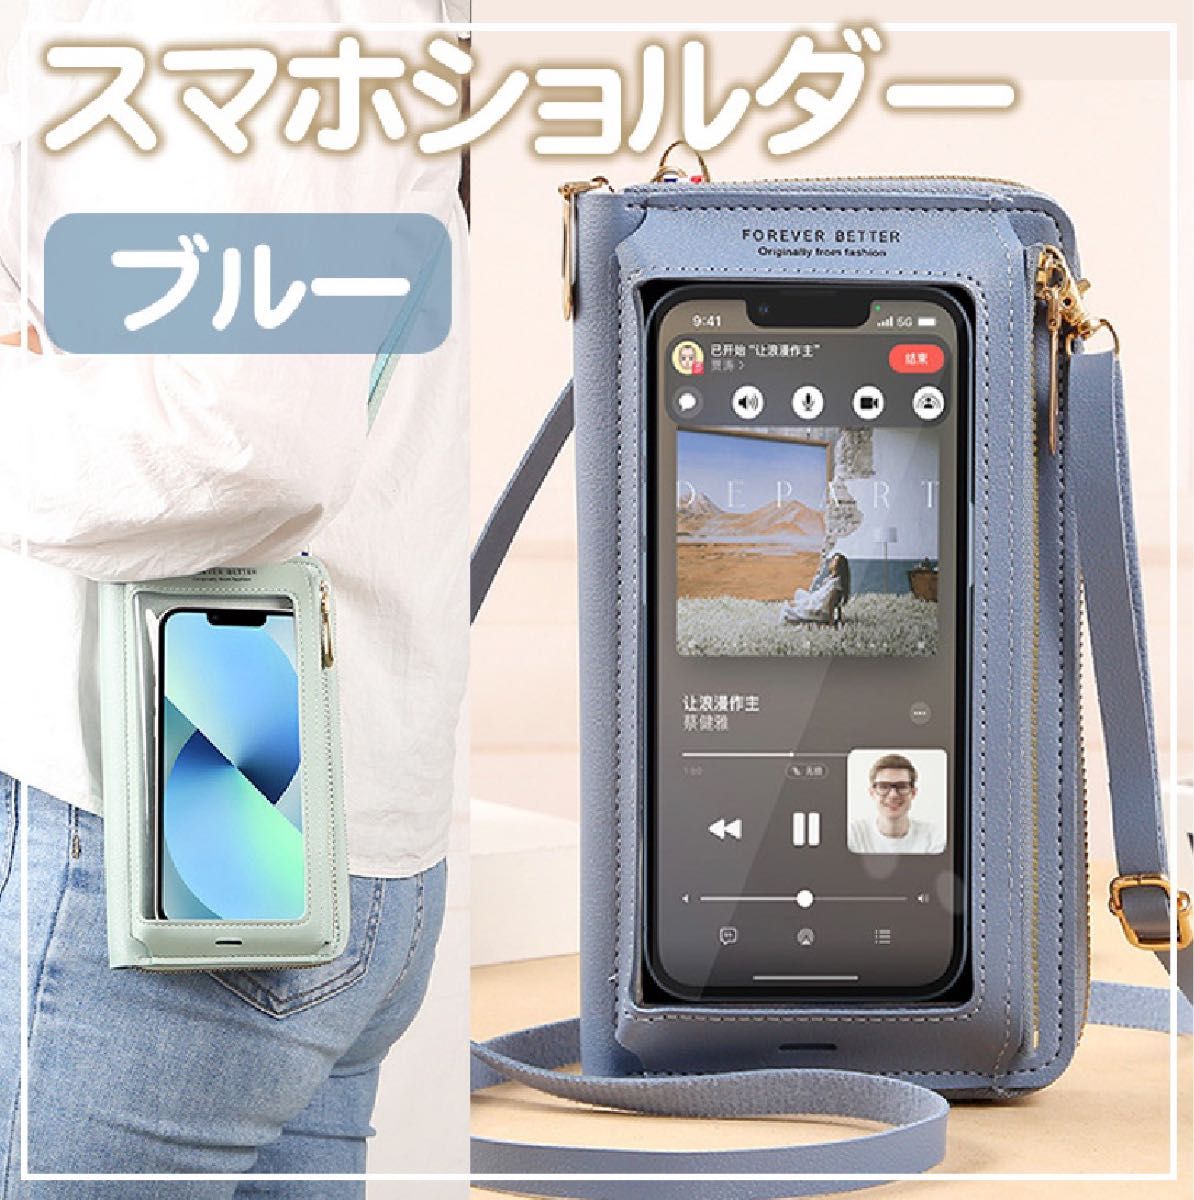 スマホショルダー 携帯ケース【ブルー】ミニバッグ  iPhone Androidポーチ 財布一体型  ストラップショルダー  財布